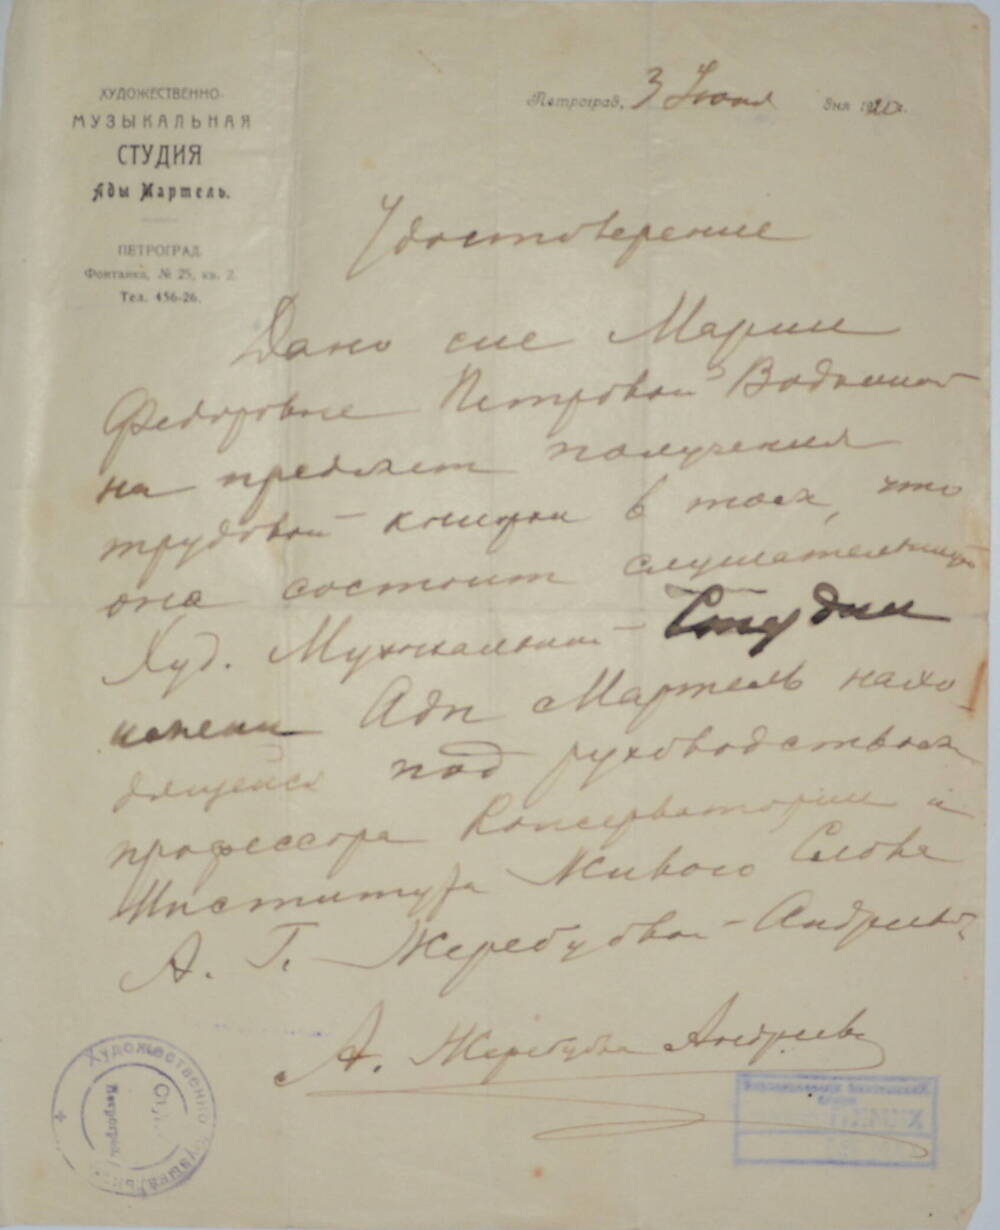 Удостоверение, выданное 03 июня 1920 г.  М.Ф. Петровой-Водкиной для получения трудовой книжки